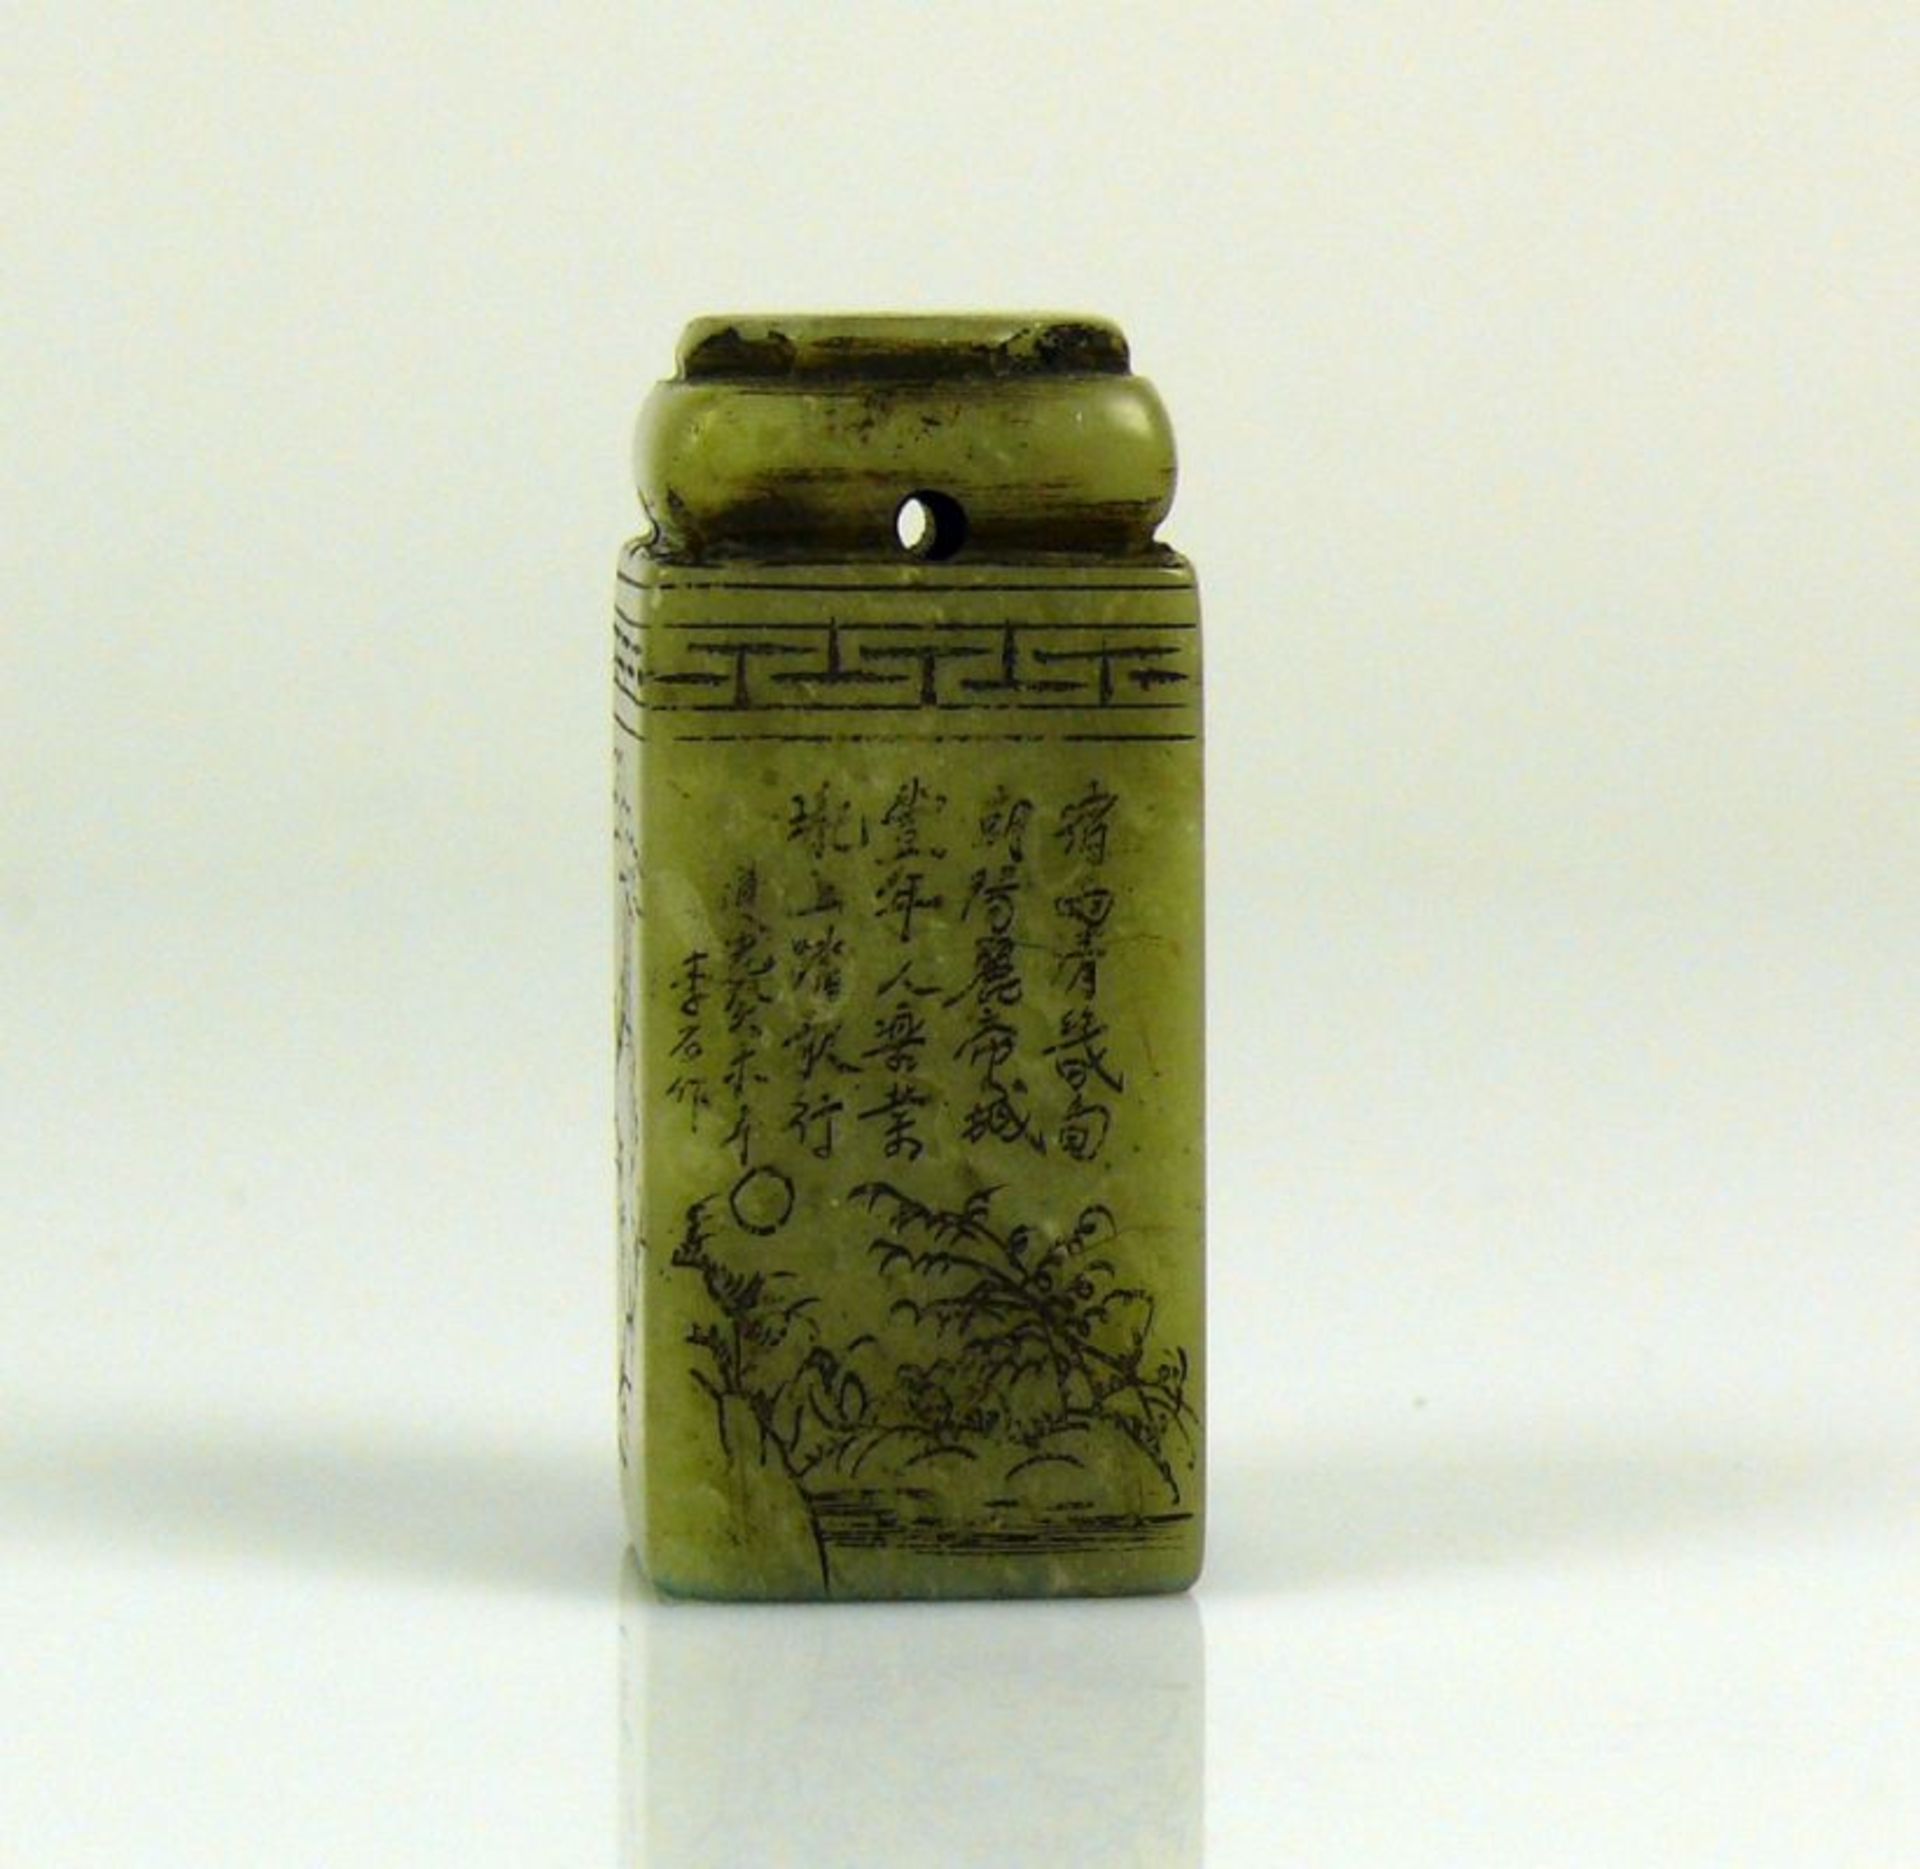 Petschaft hellgrüner Stein mit ziselierter Beschriftung und Floraldekor; Höhe: ca 5 cm